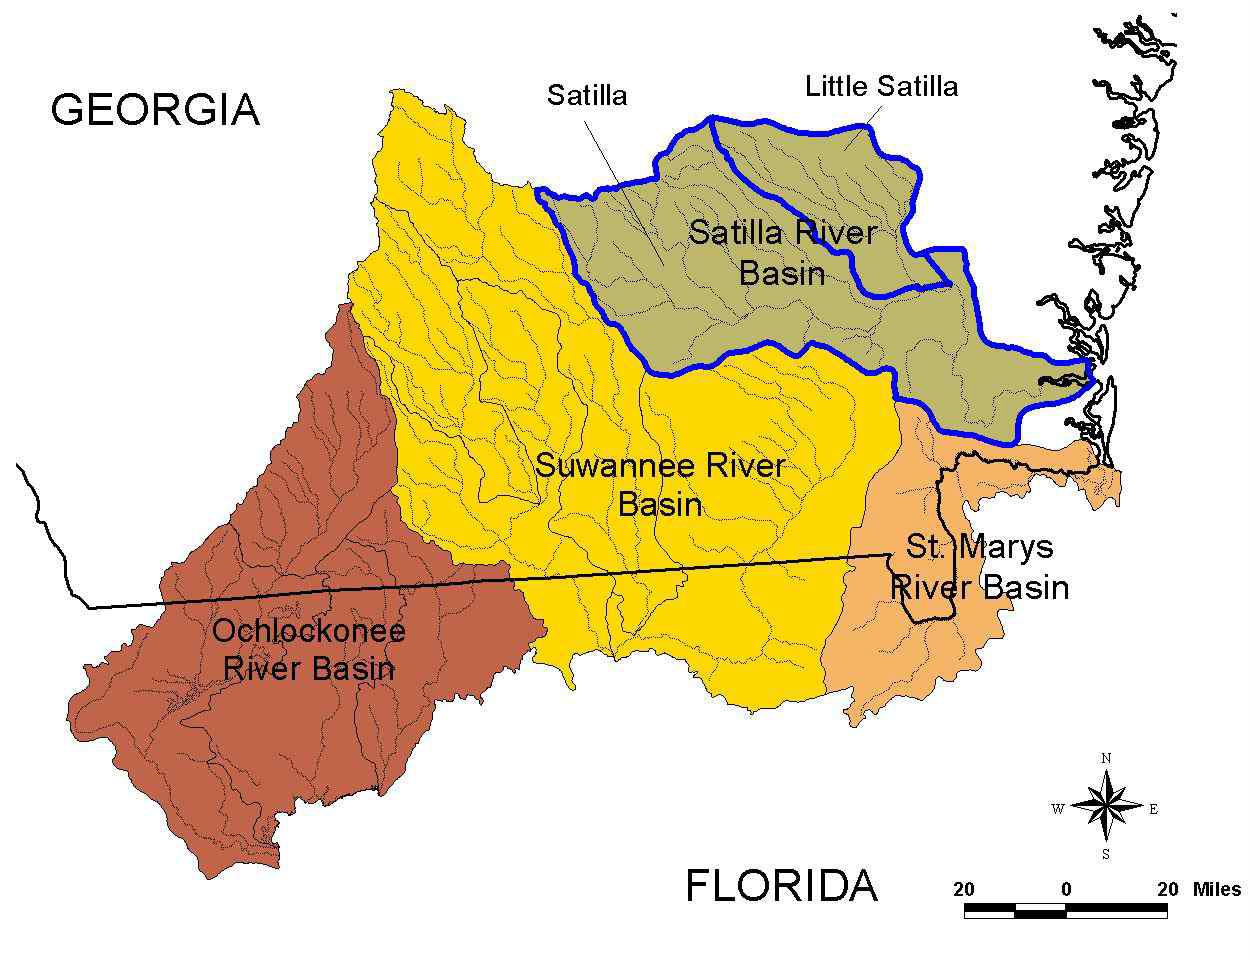 용존산소 항목에 대한 TMDL 수립이 요구되는 Georgia주 남부 4개 유역